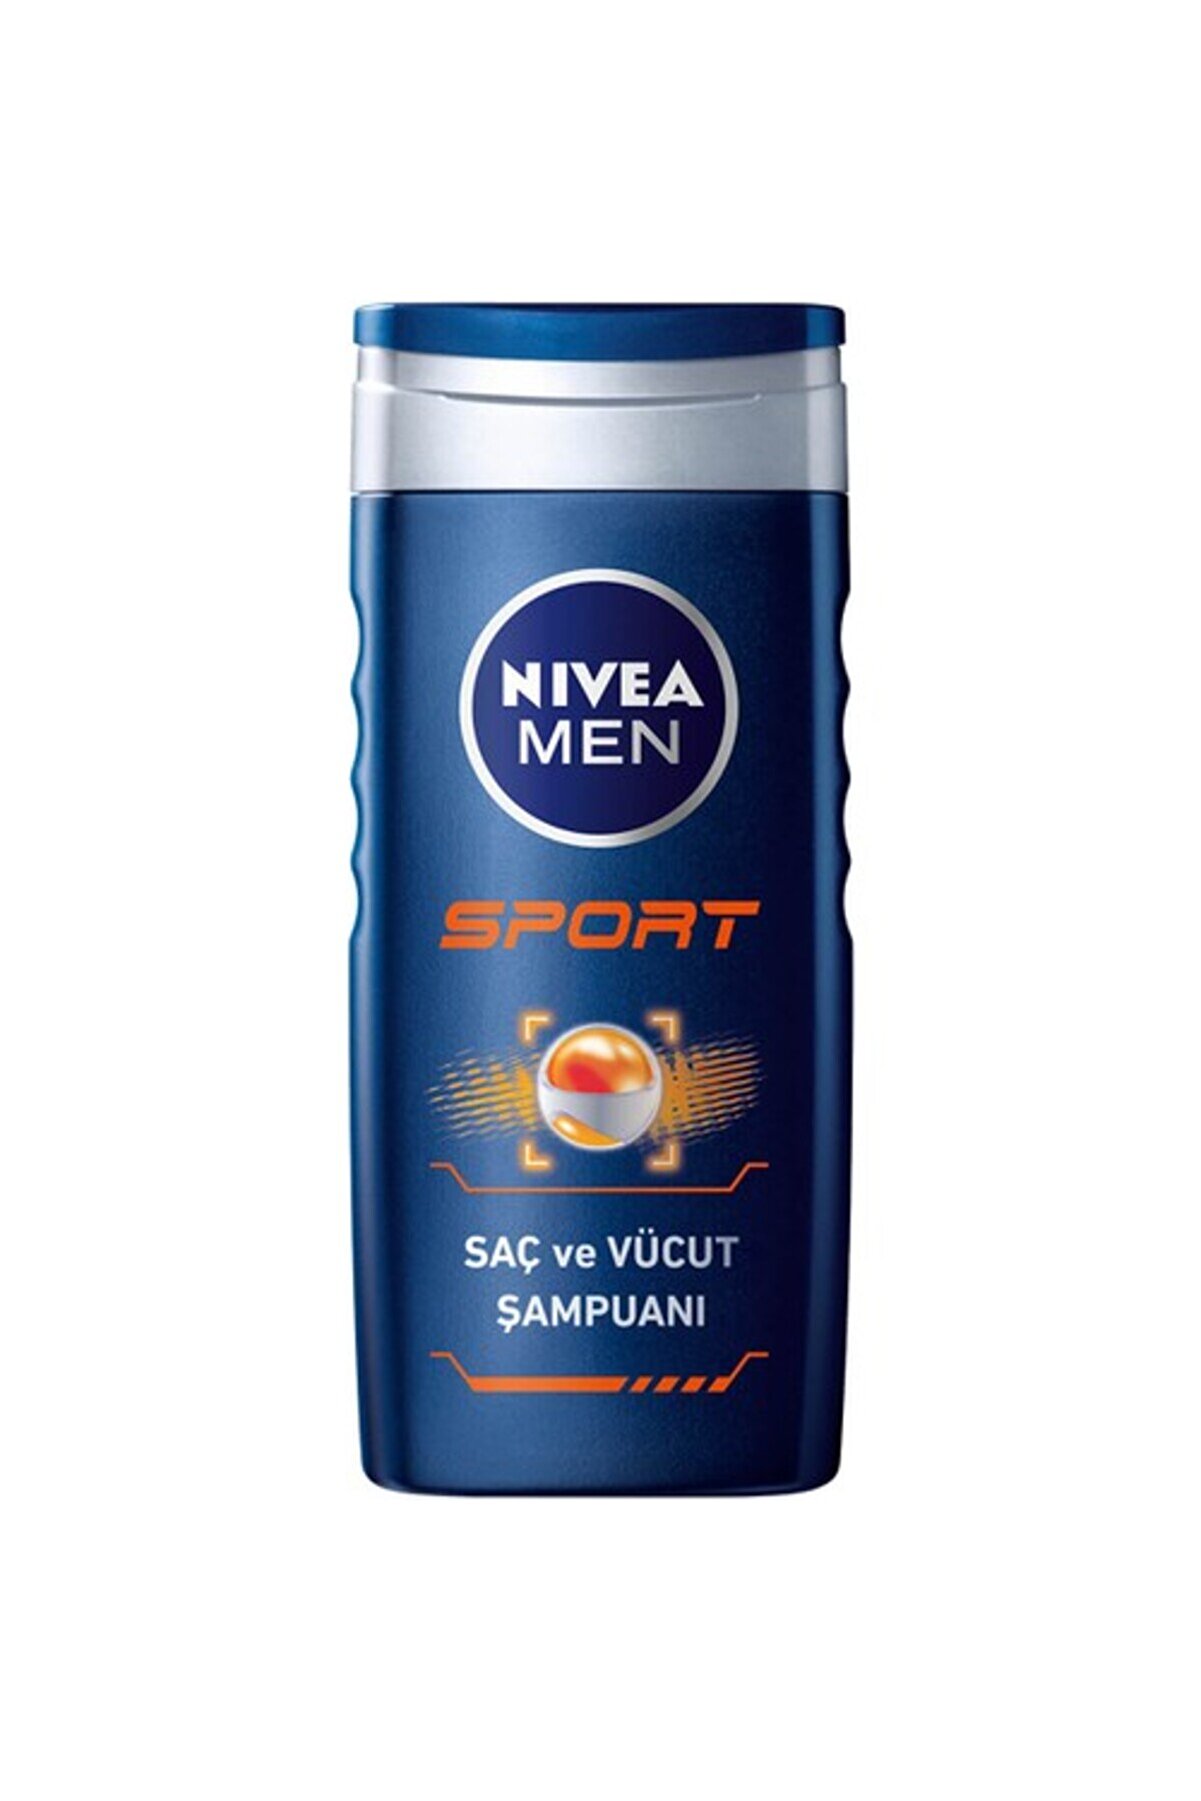 NIVEA Men Sport Erkekler Için Saç;yüz Ve Vücut Şampuanı 500 Ml;duş Jeli;24 Saat Ferahlık